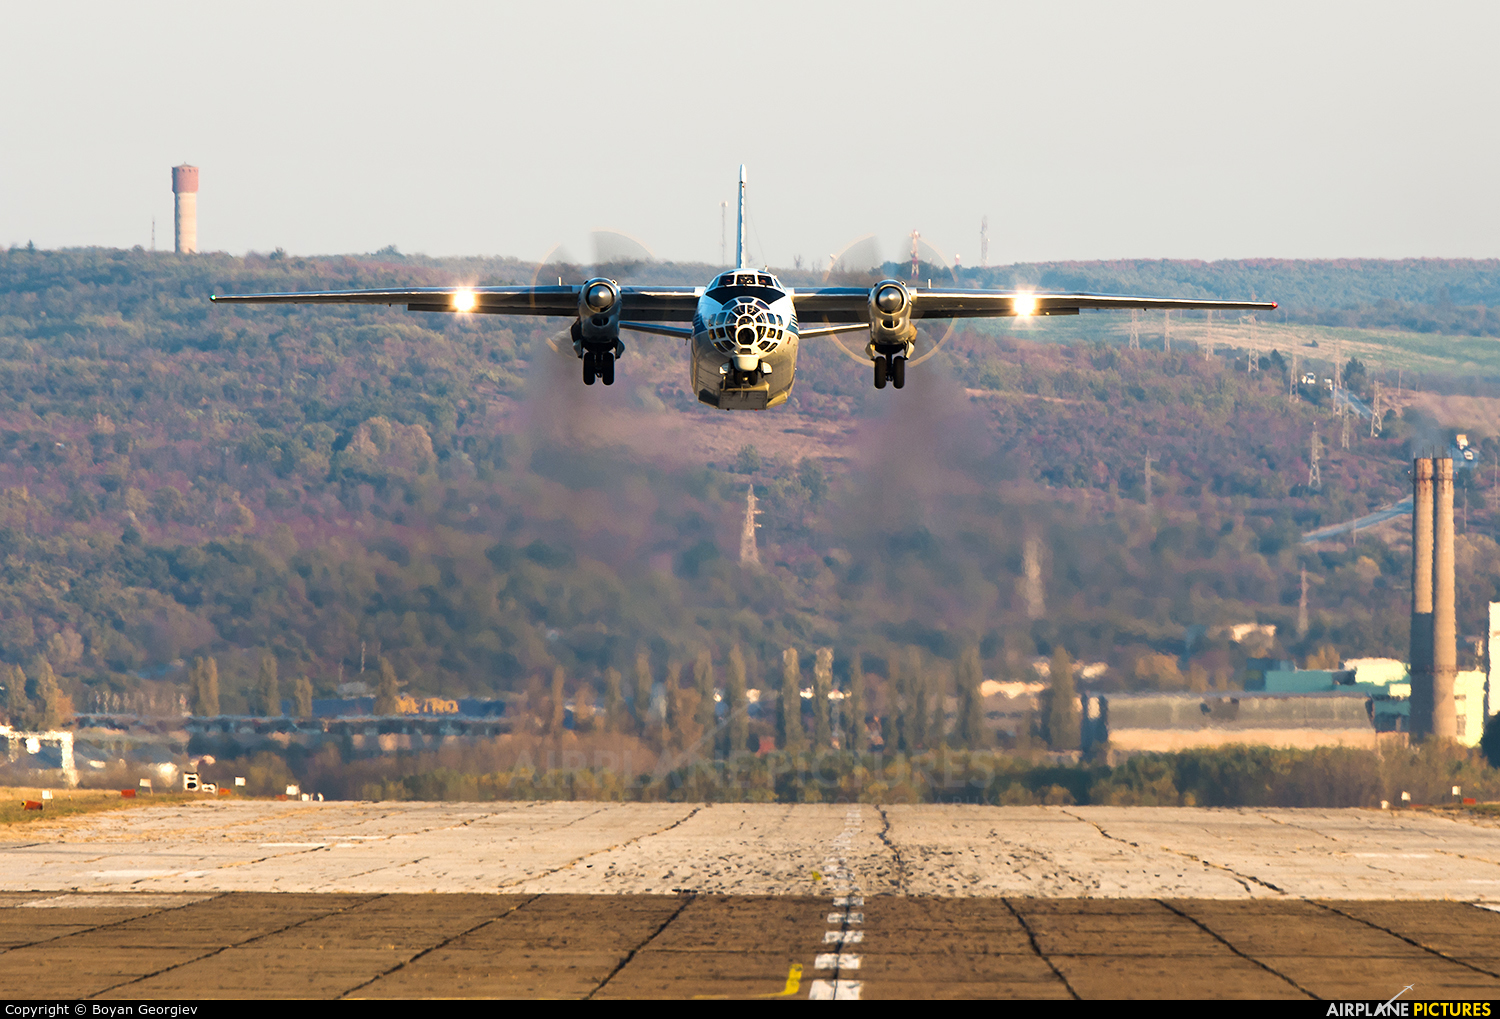 Bulgaria - Air Force 055 aircraft at Dolna Mitropolia